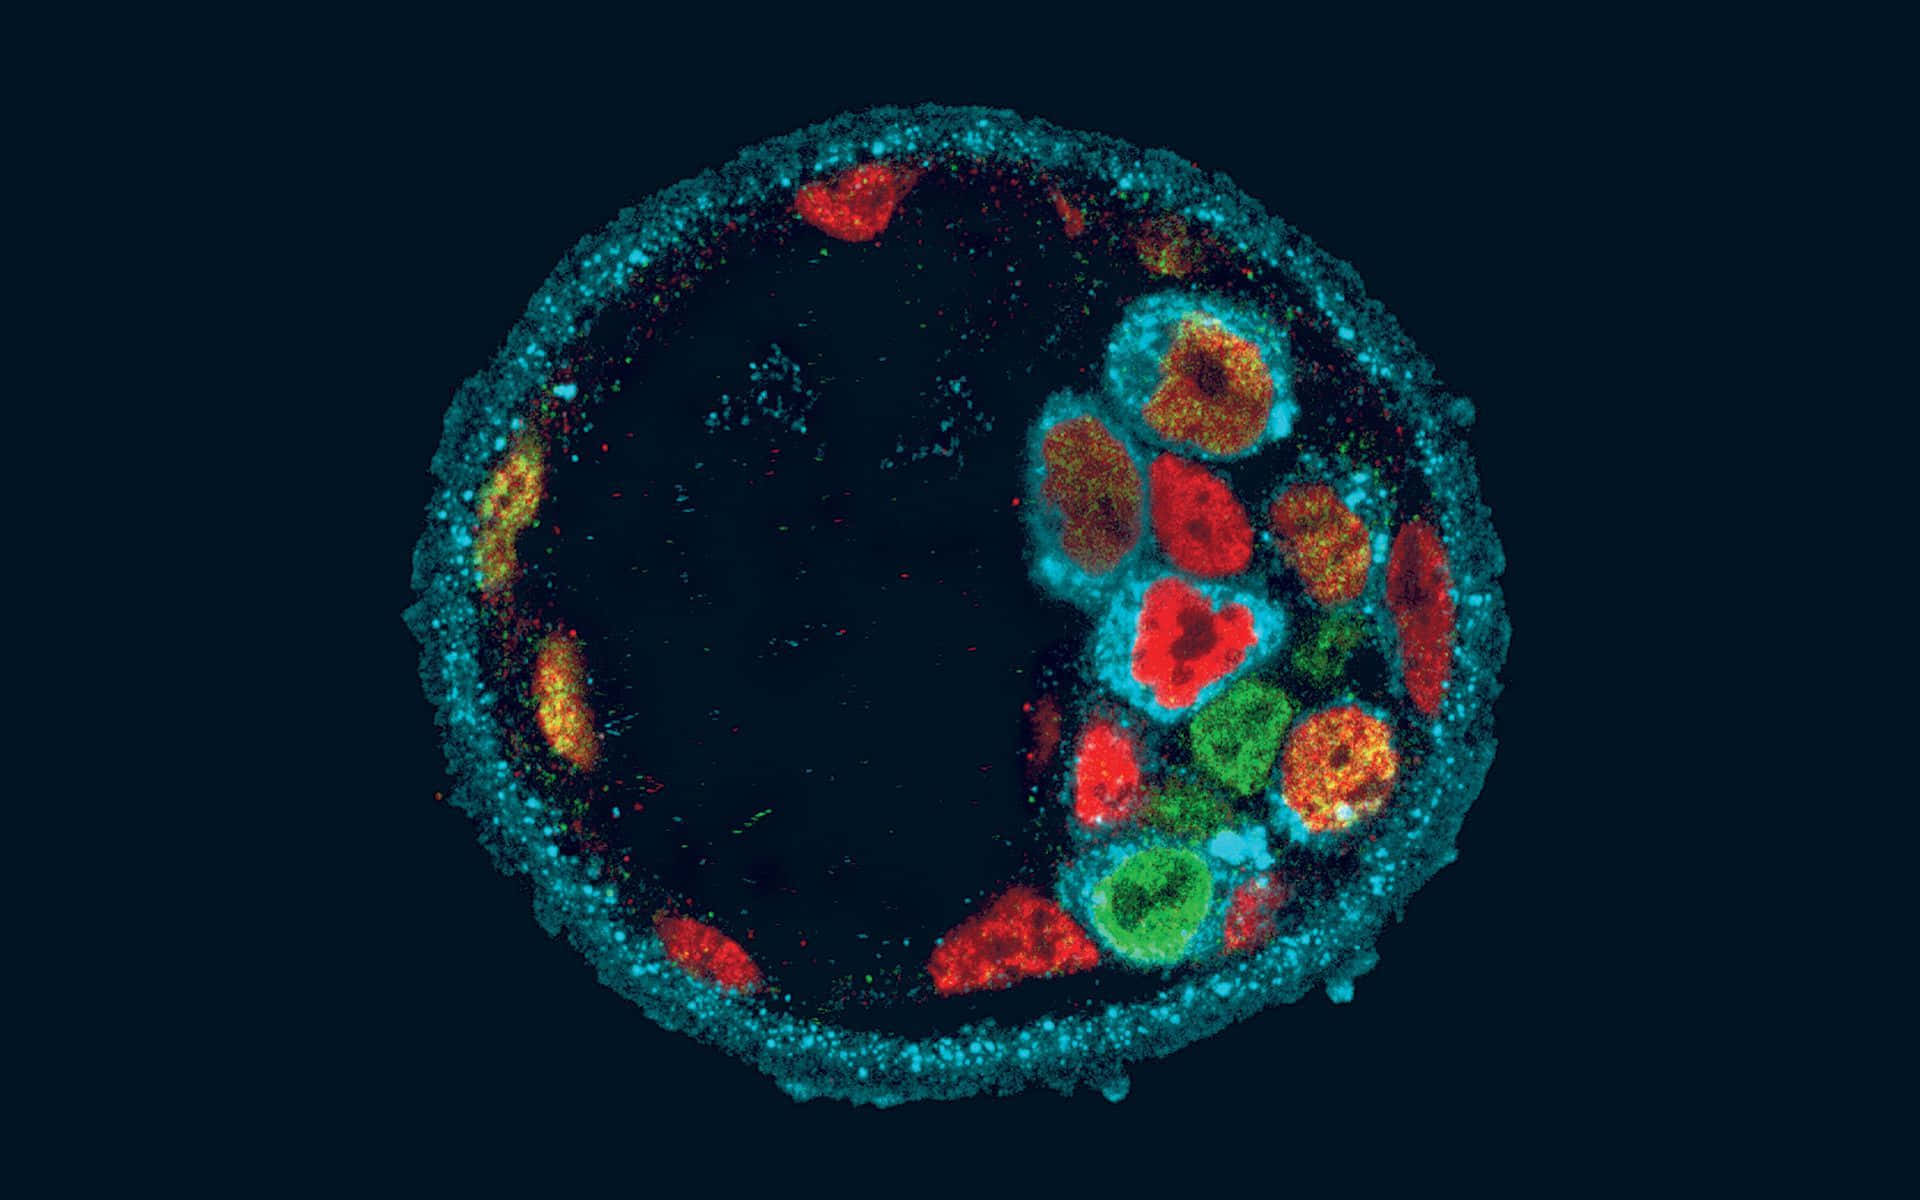 Imagende Células Coloridas De Biología